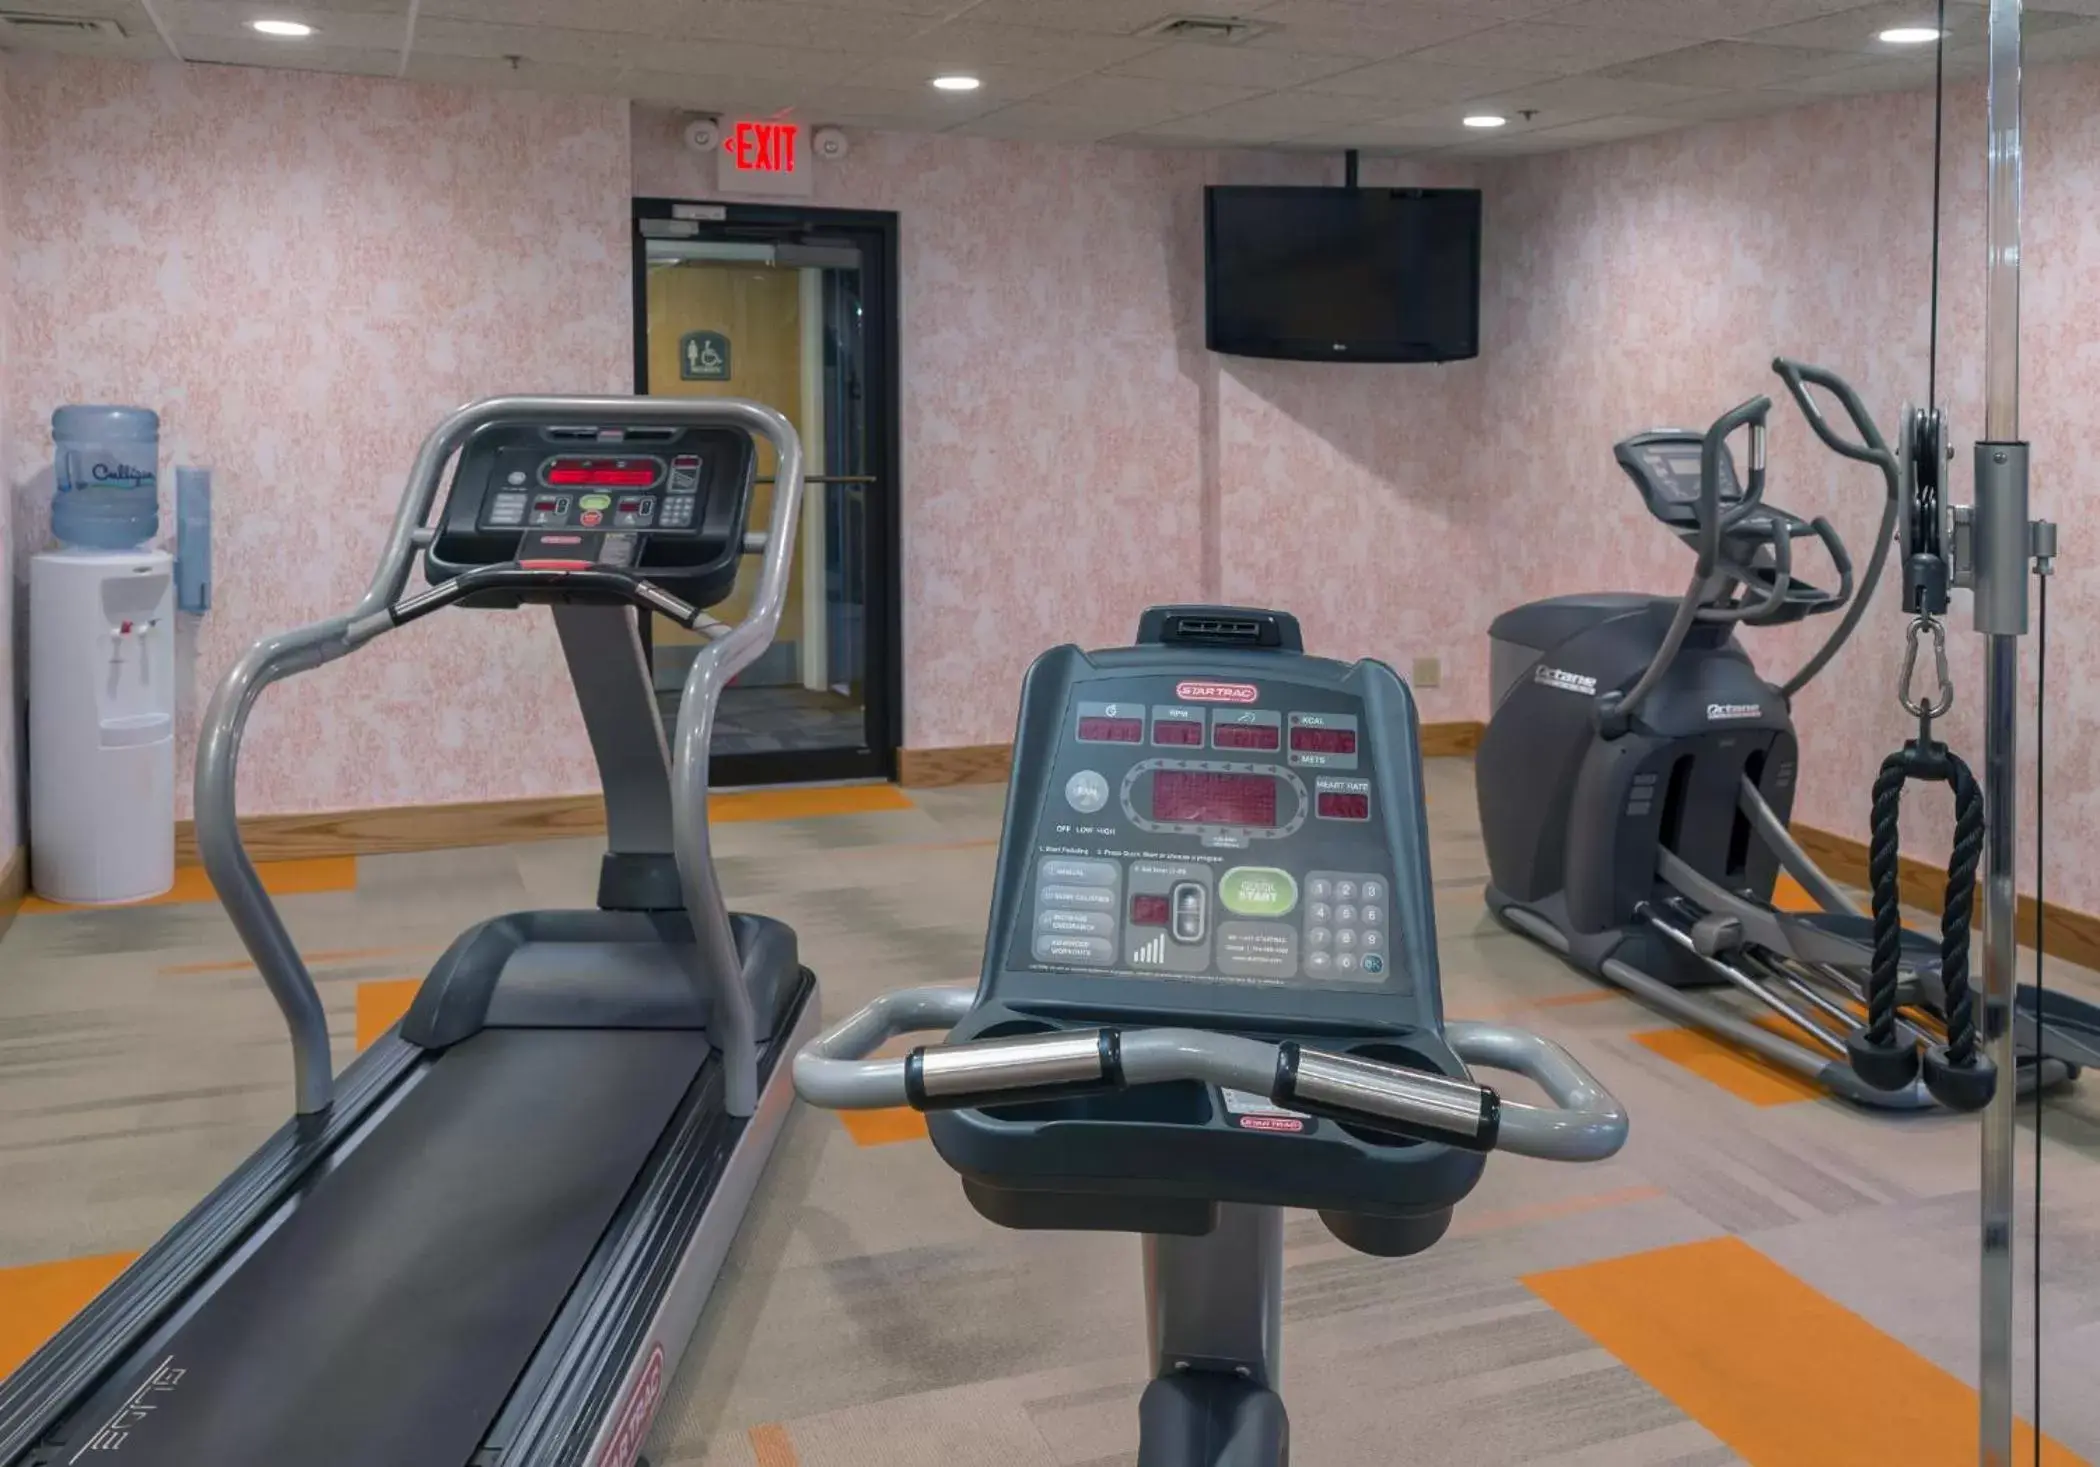 Fitness centre/facilities, Fitness Center/Facilities in LivINN Hotel Cincinnati North/ Sharonville